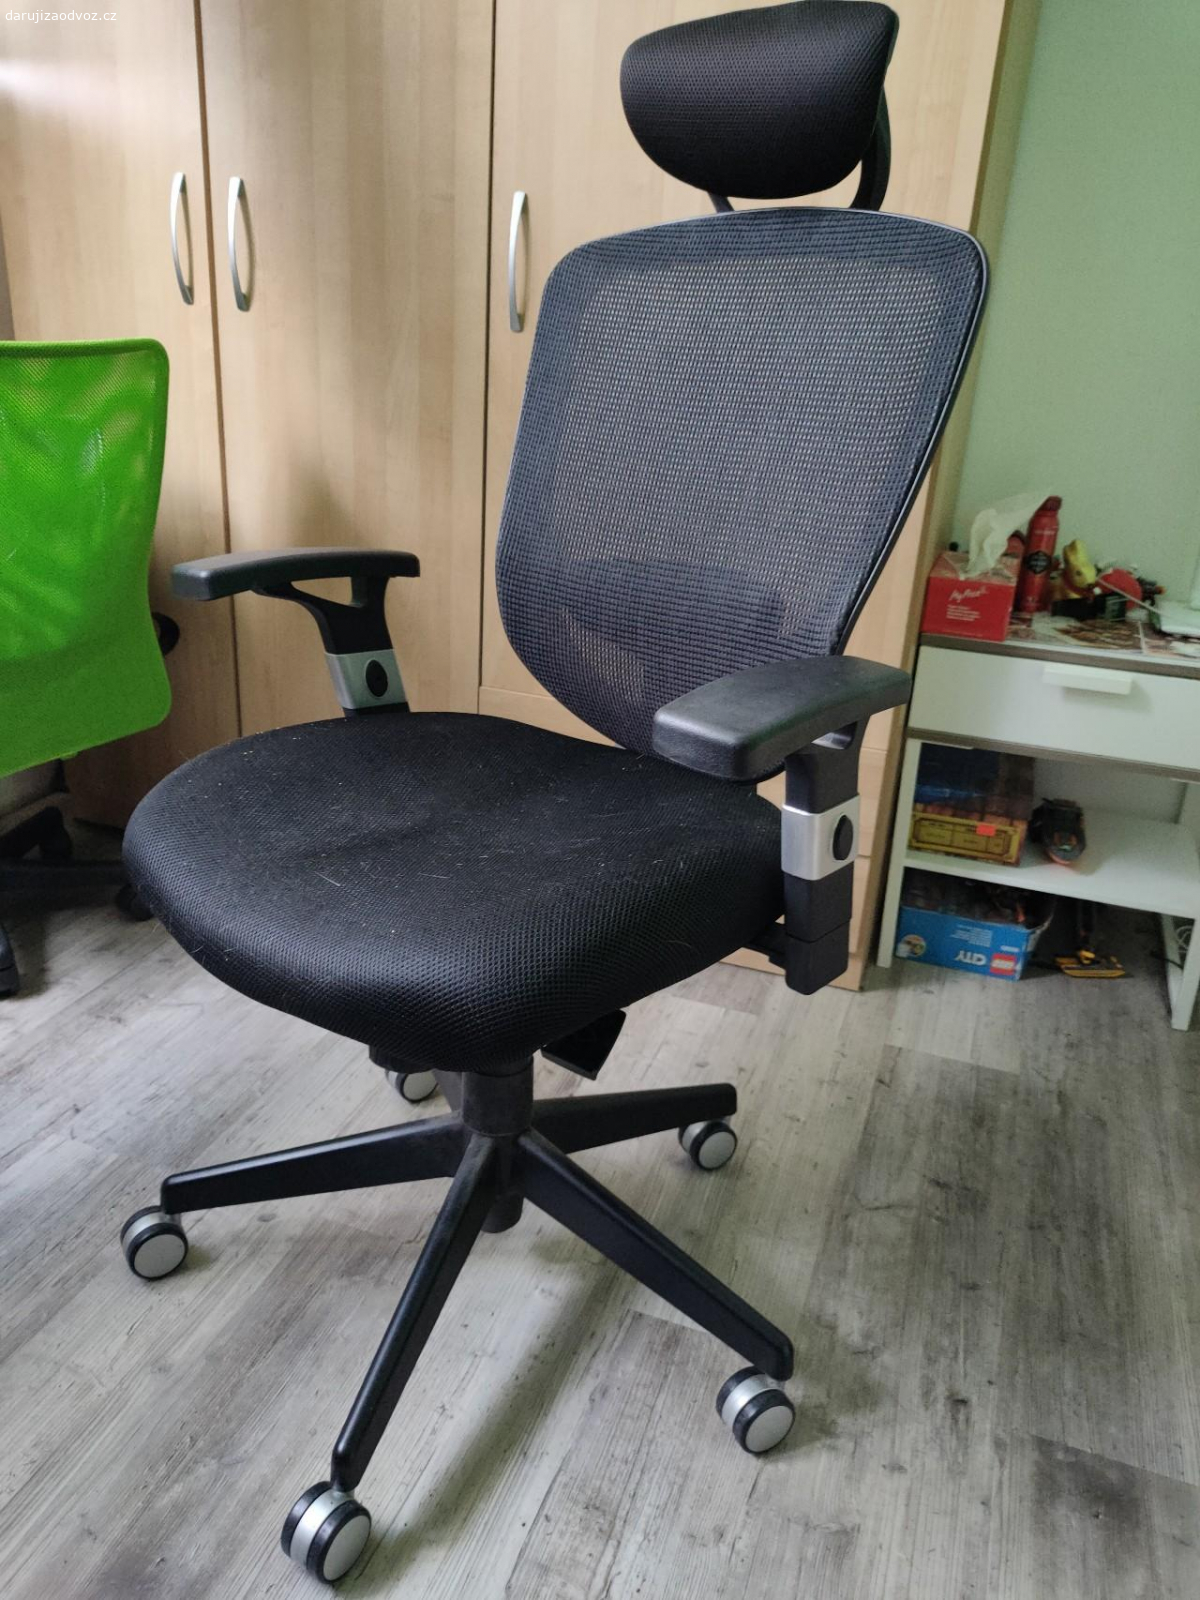 Kancelářská židle. Daruji za odvoz kancelářskou židli.
Vše funkční.
Brno